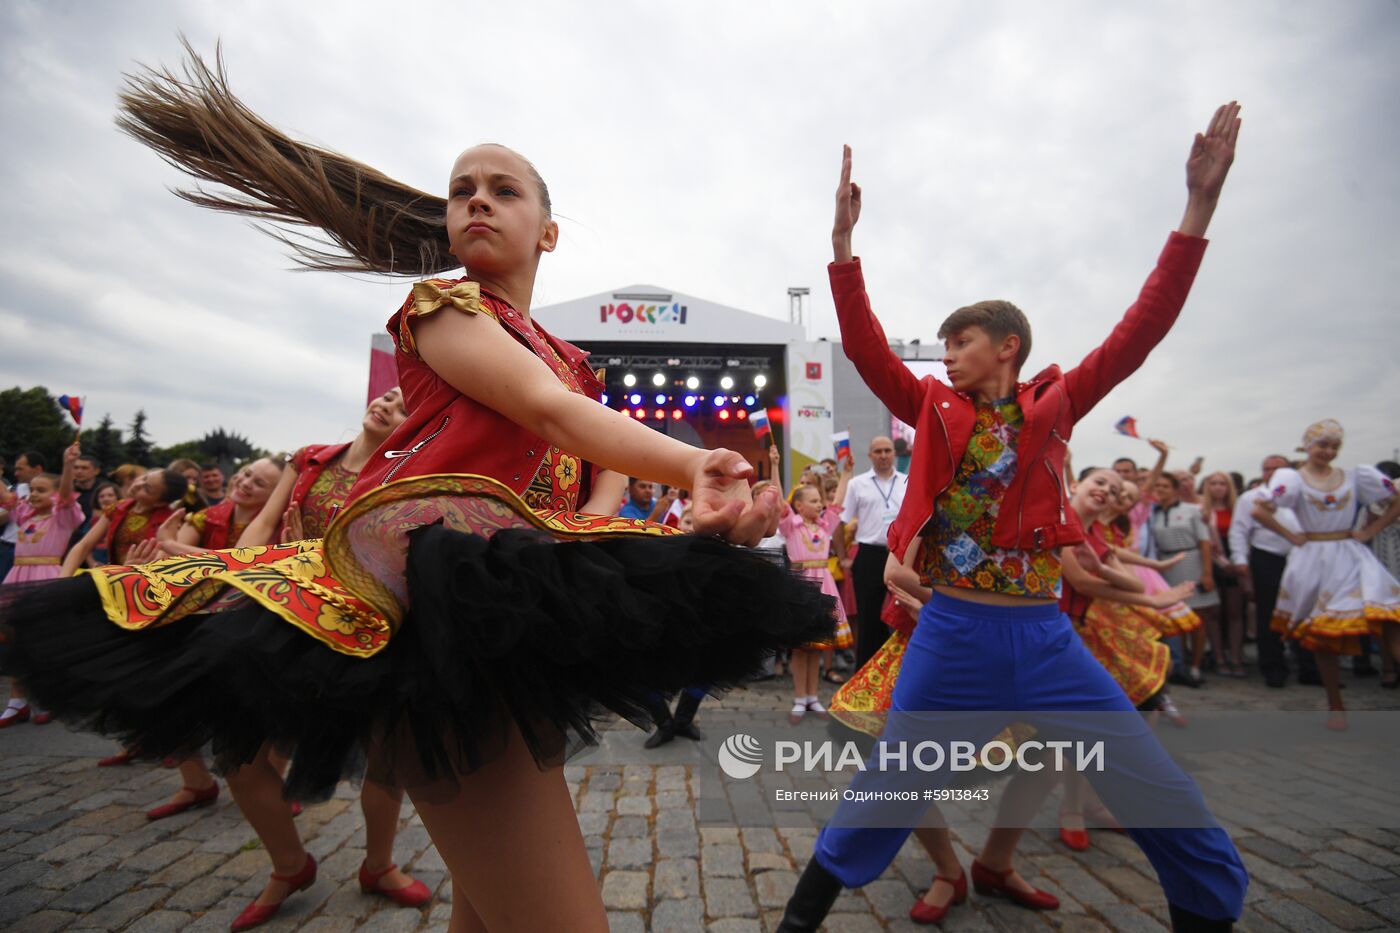 Фестиваль "Многонациональная Россия"